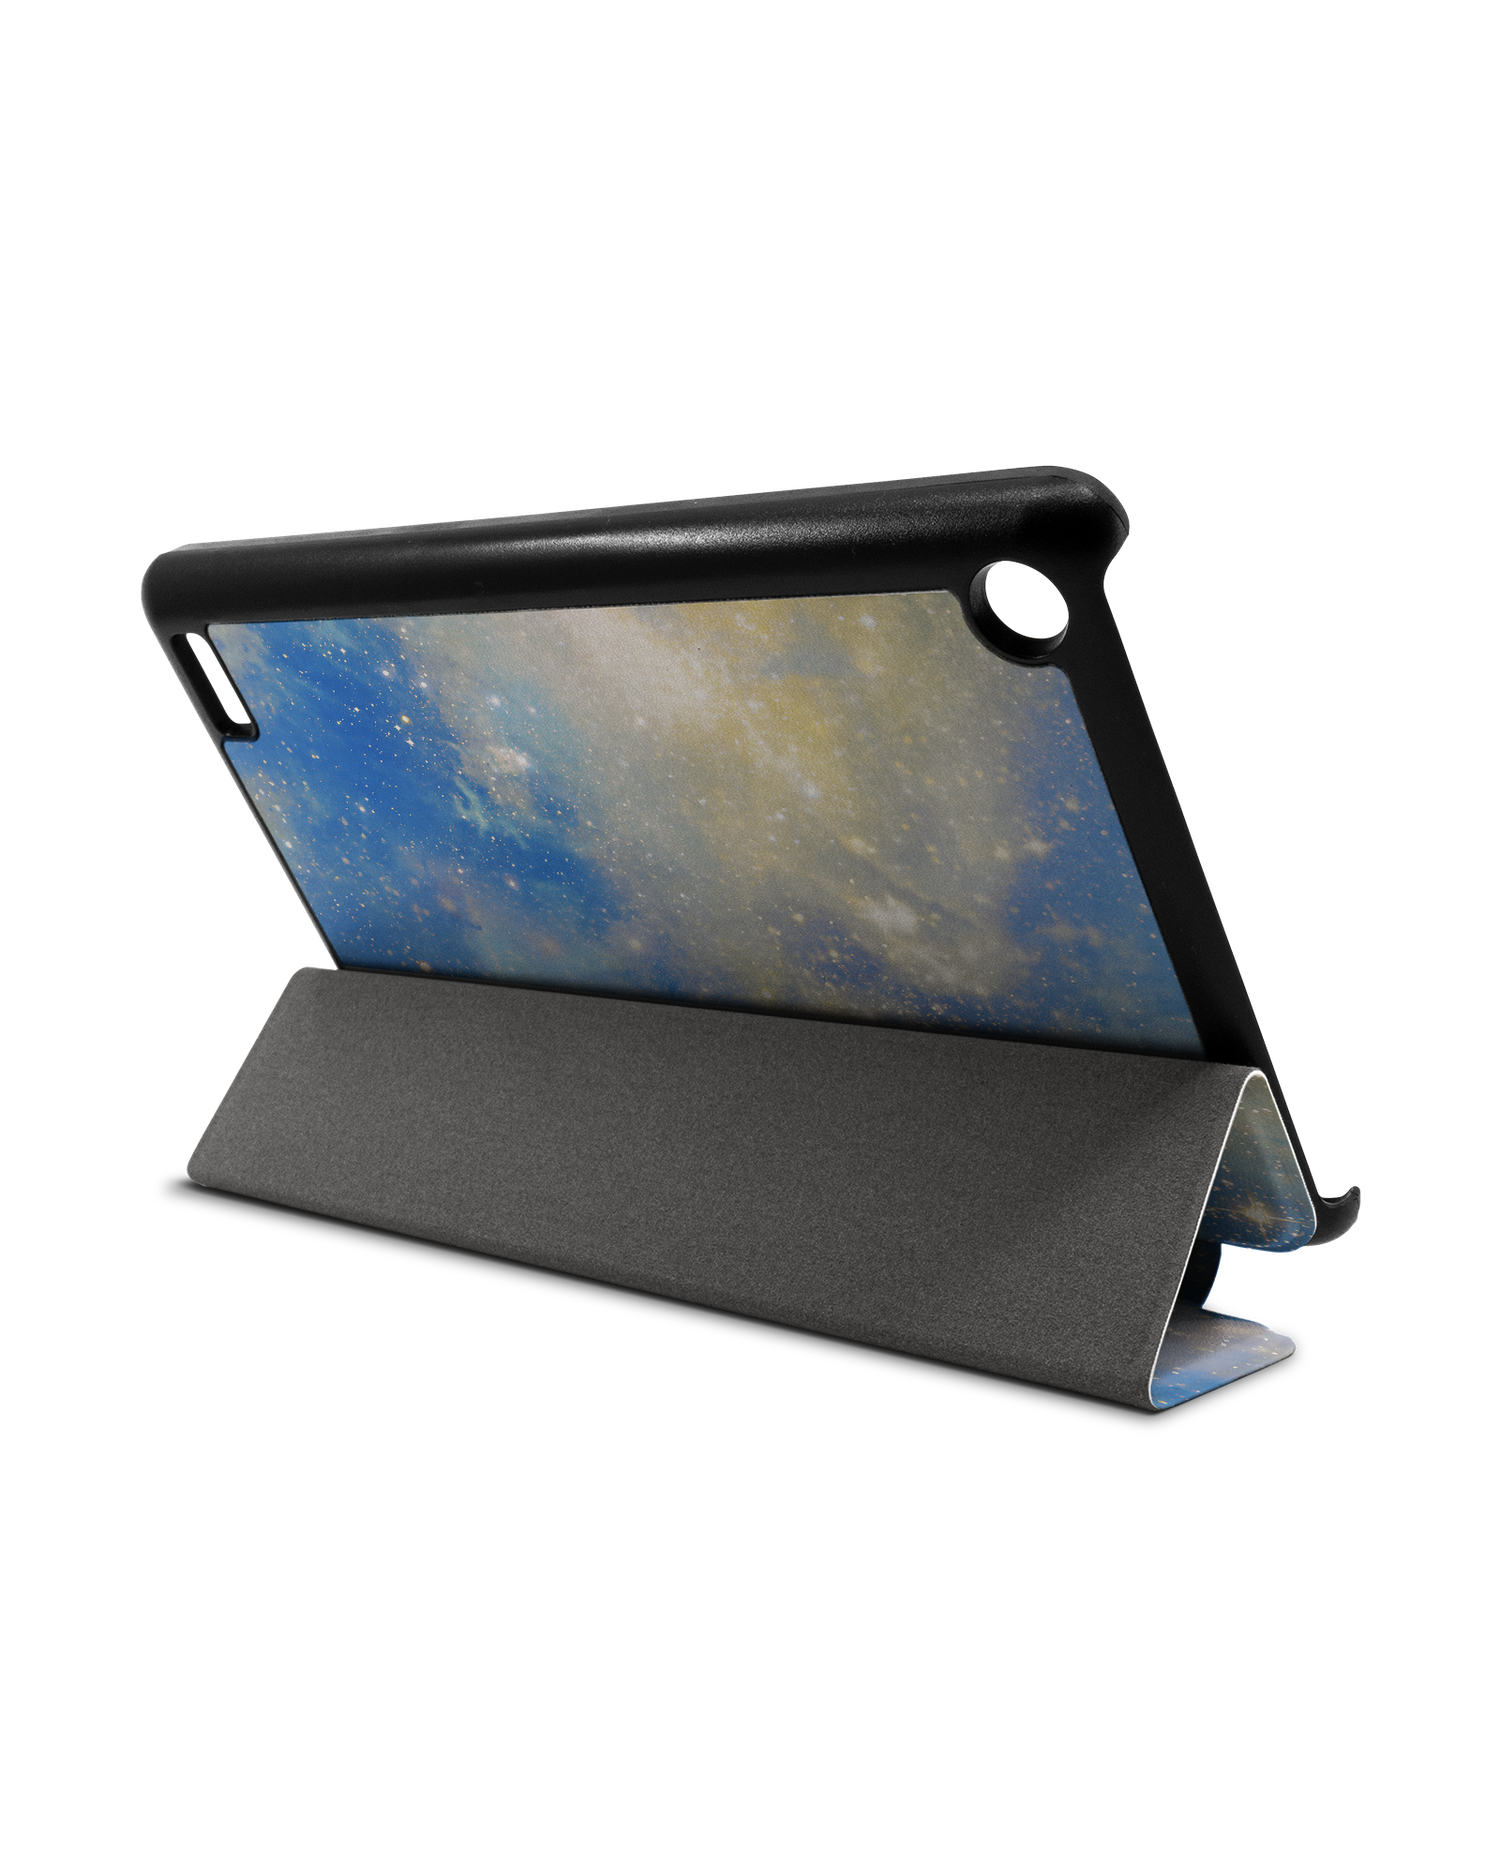 Spaced Out Tablet Smart Case für Amazon Fire 7: Aufgestellt im Querformat